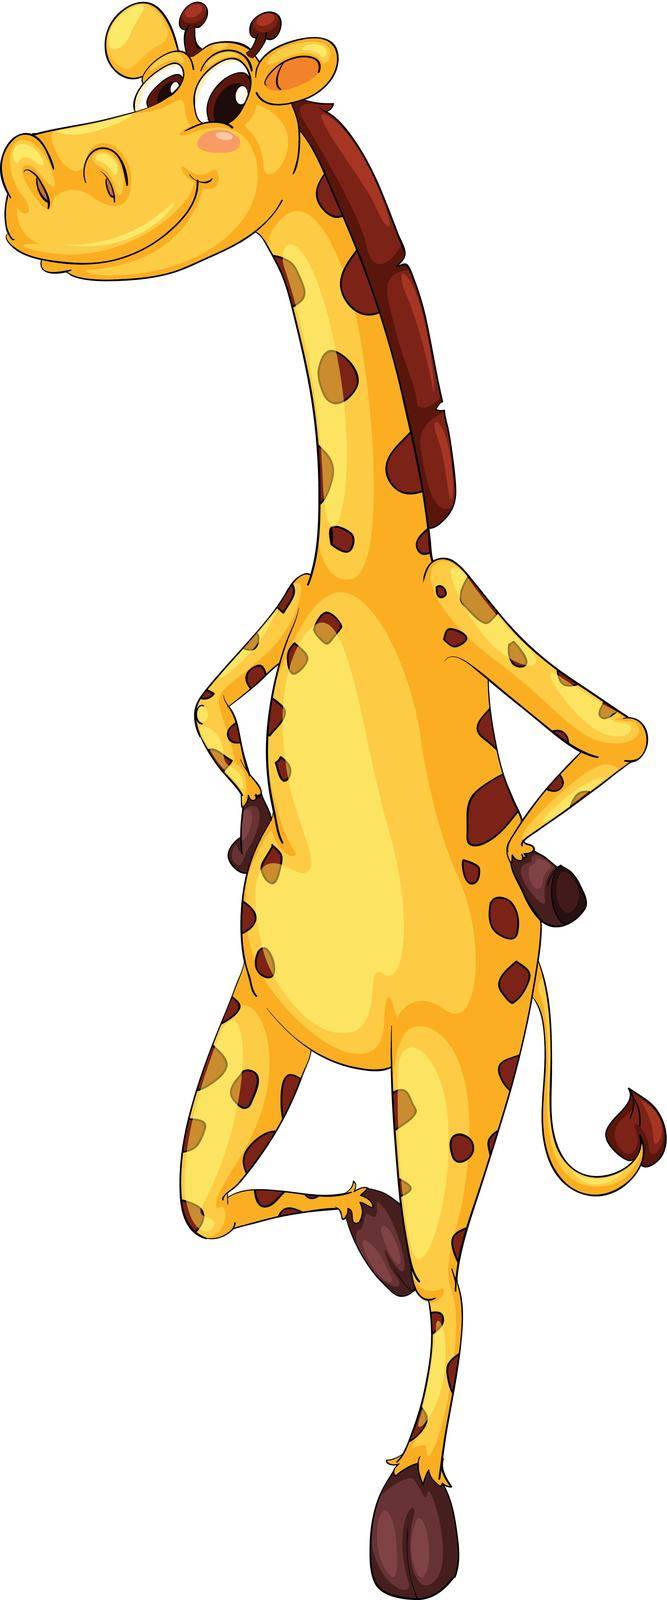 Cute giraffe by iimages